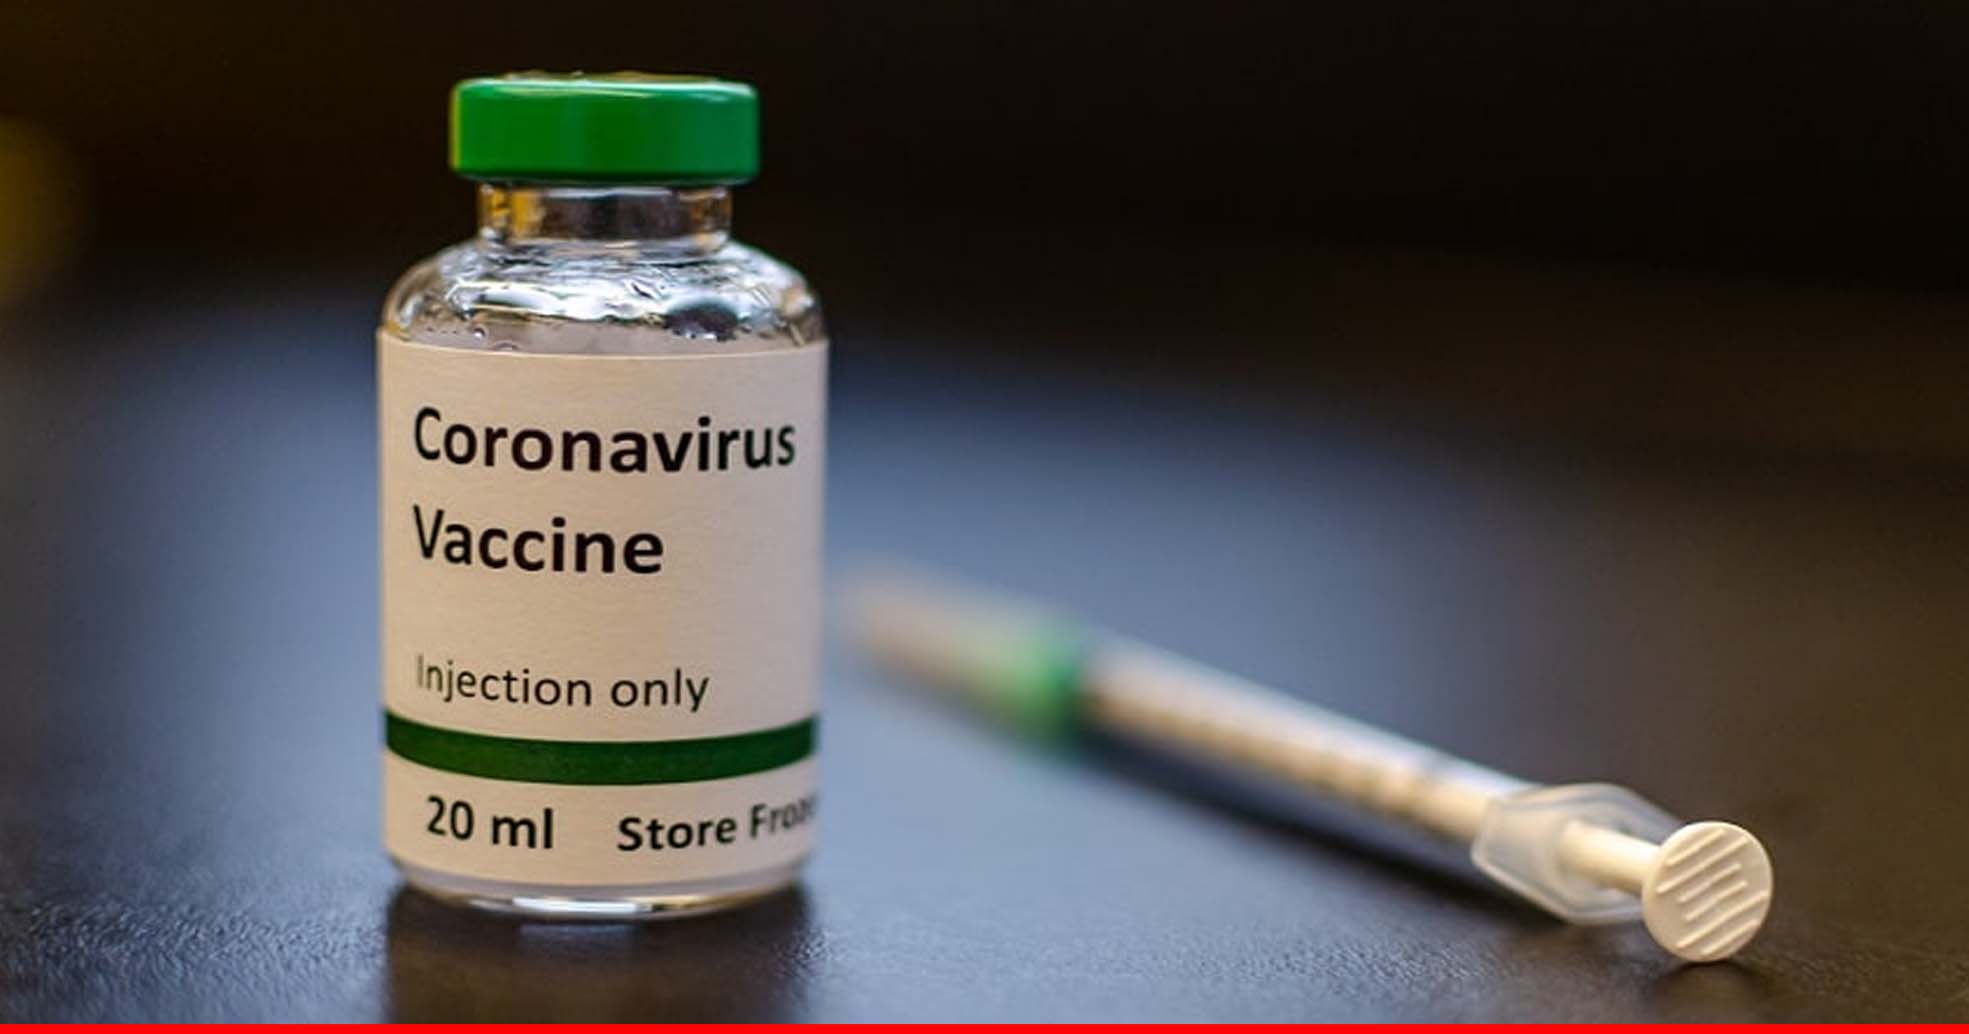 तेलंगाना: अस्पताल से कोविशील्ड वैक्सीन की 50 वाइल गायब, जांच के आदेश